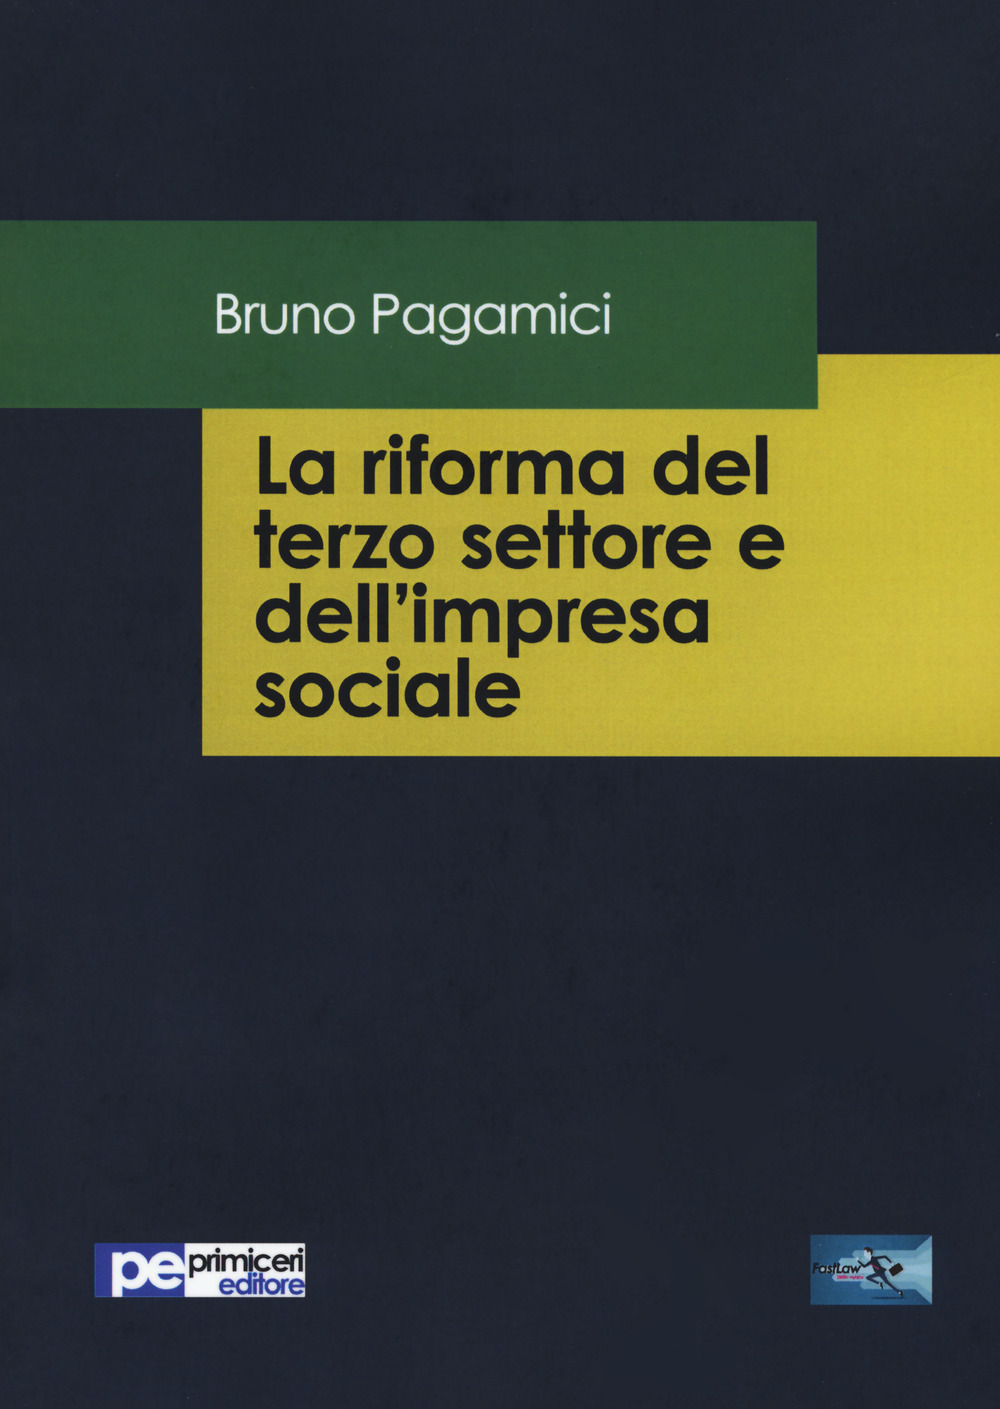 Libri Bruno Pagamici - La Riforma Del Terzo Settore E Dell'impresa Sociale NUOVO SIGILLATO, EDIZIONE DEL 31/10/2017 SUBITO DISPONIBILE